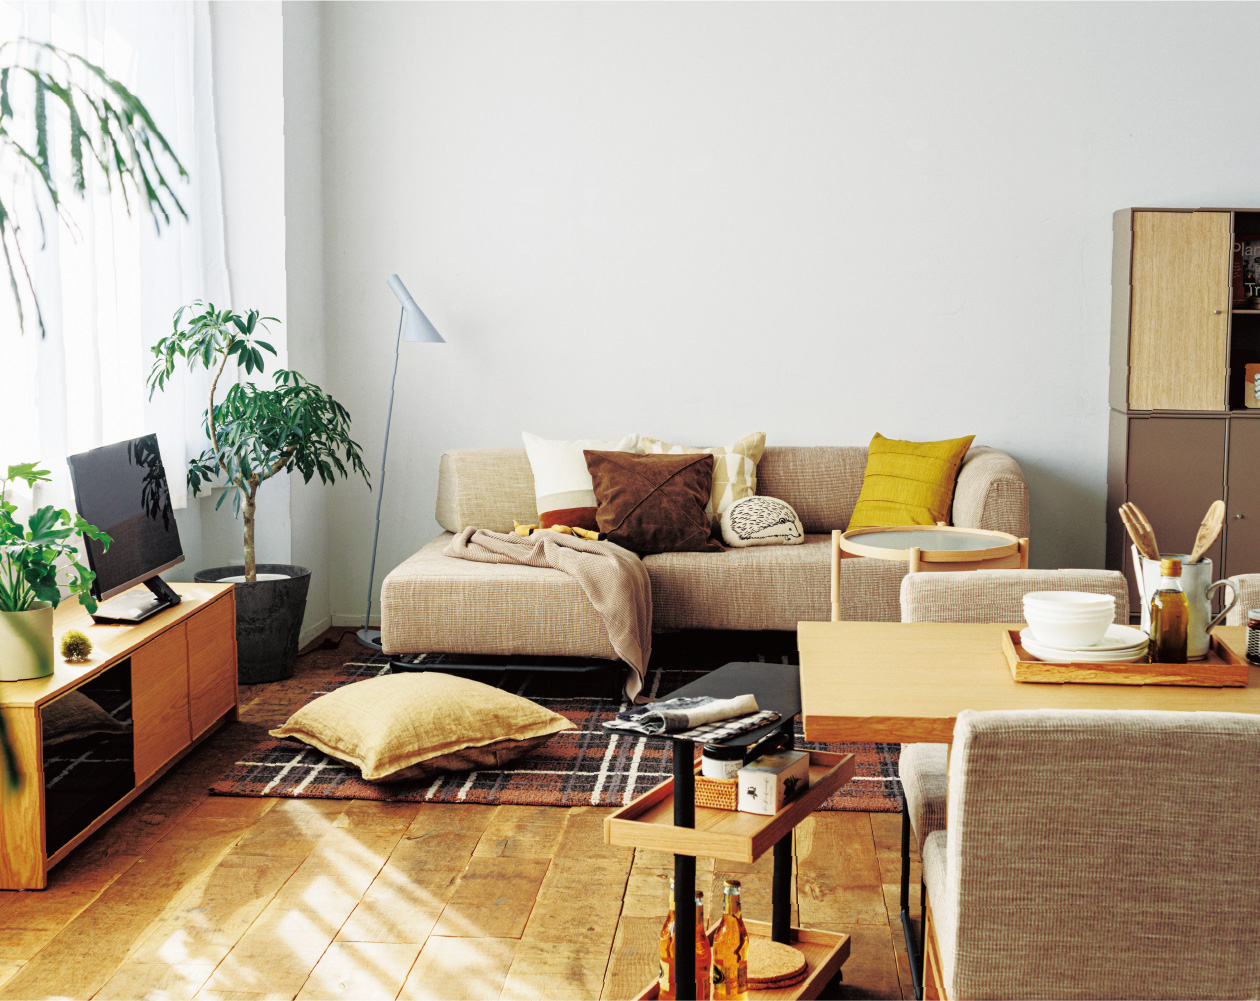 OWN-S 変化していく暮らしに応える家具 - ピックアップアイテム - ACTUS